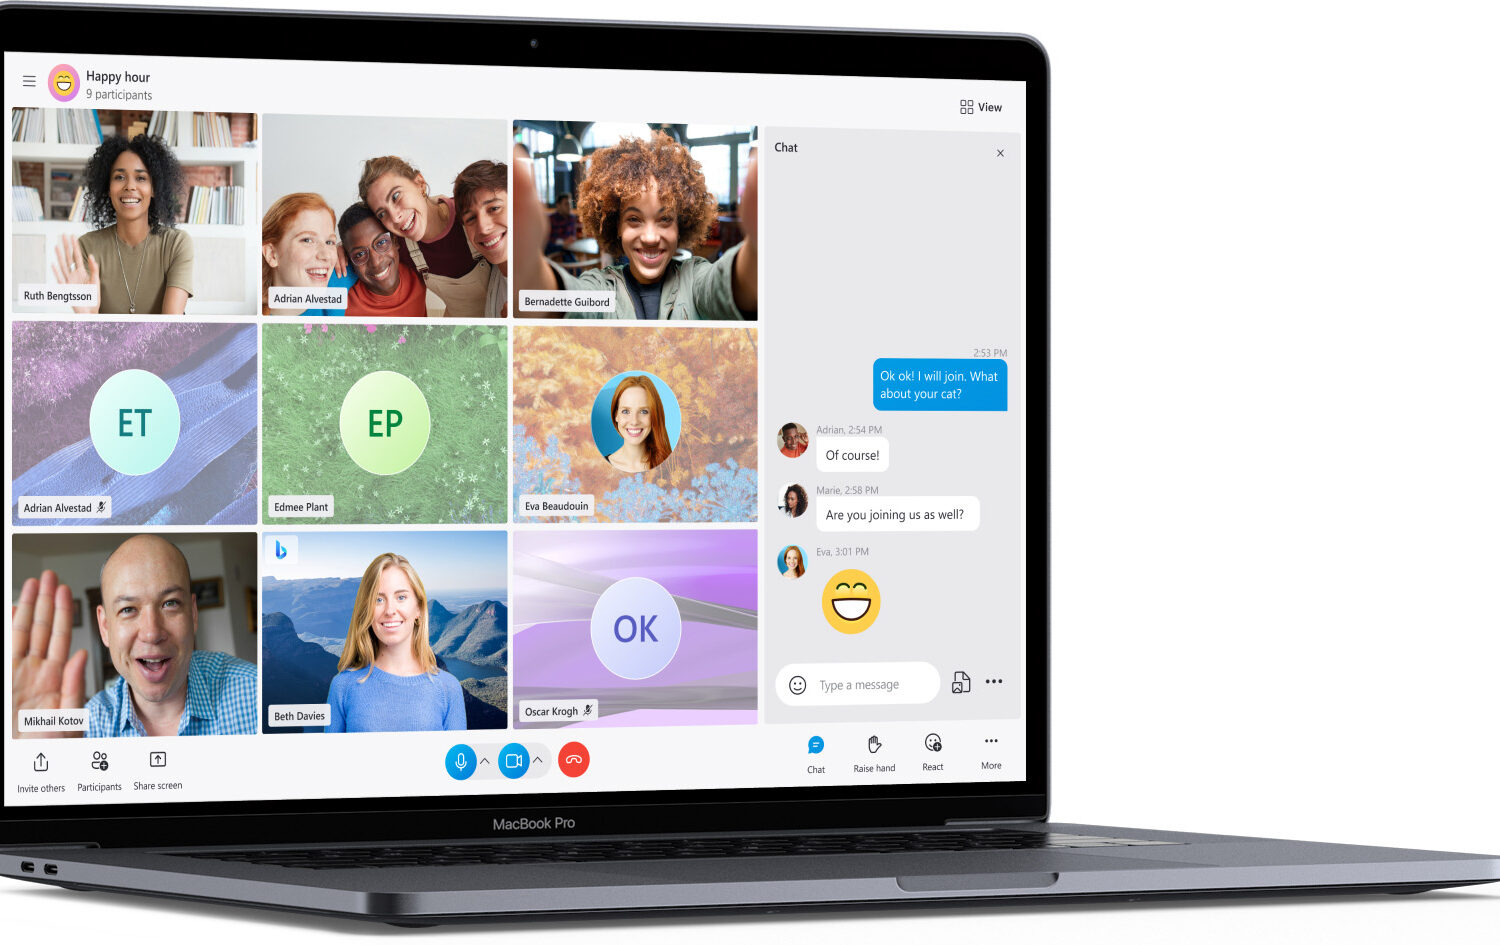 Marketing image showcasing Skype on Apple silicon MacBook Pro